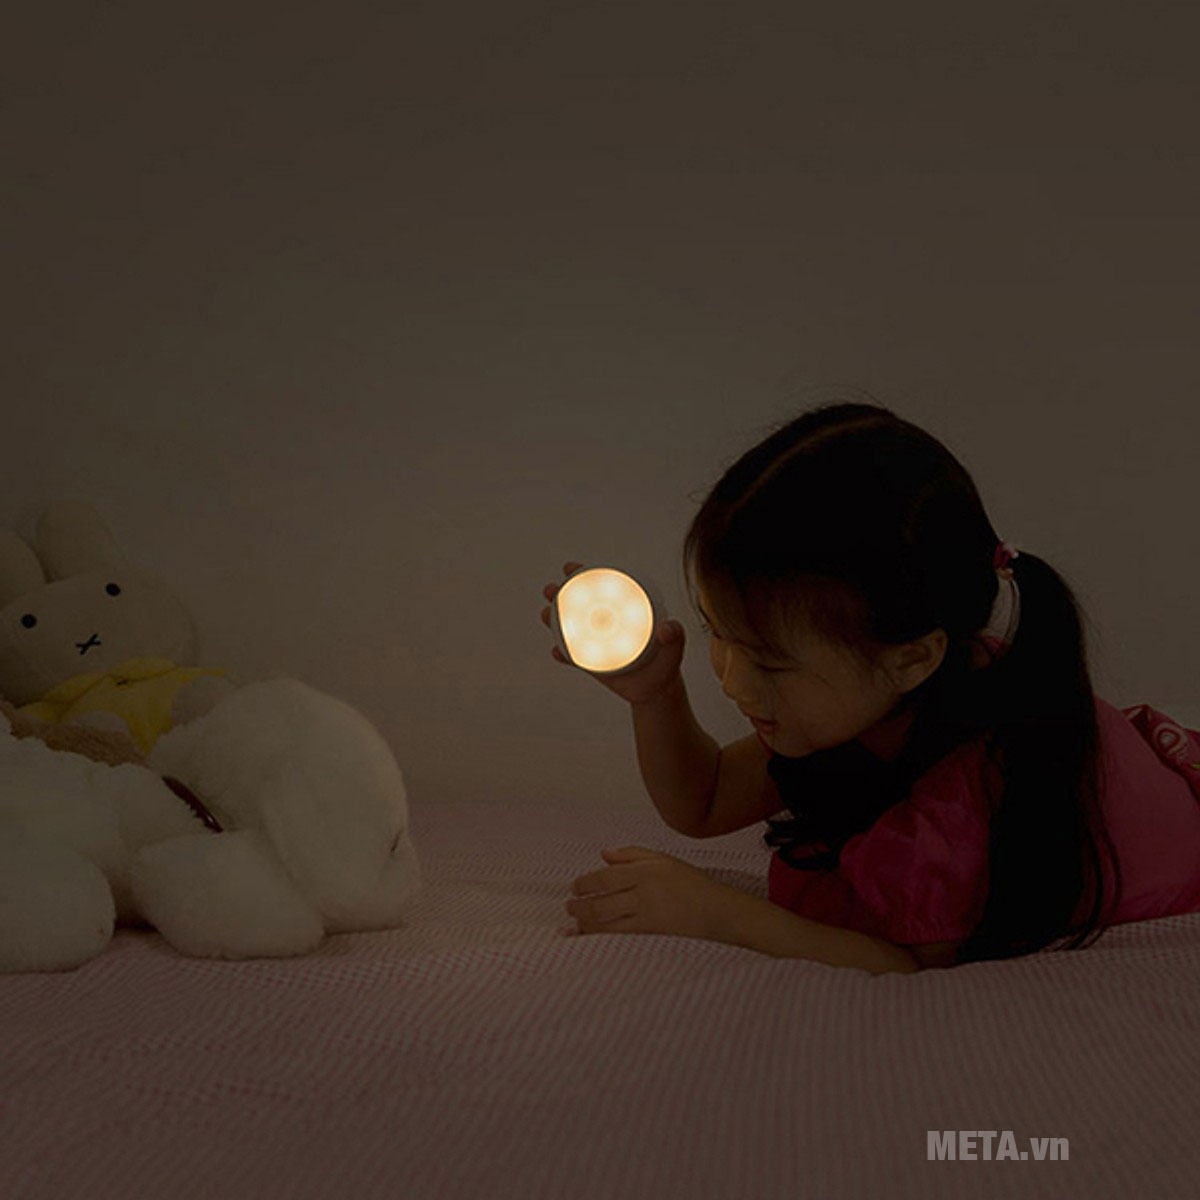 3 loại ánh sáng gây hỏng mắt bé mà bố mẹ thường không quan tâm đến